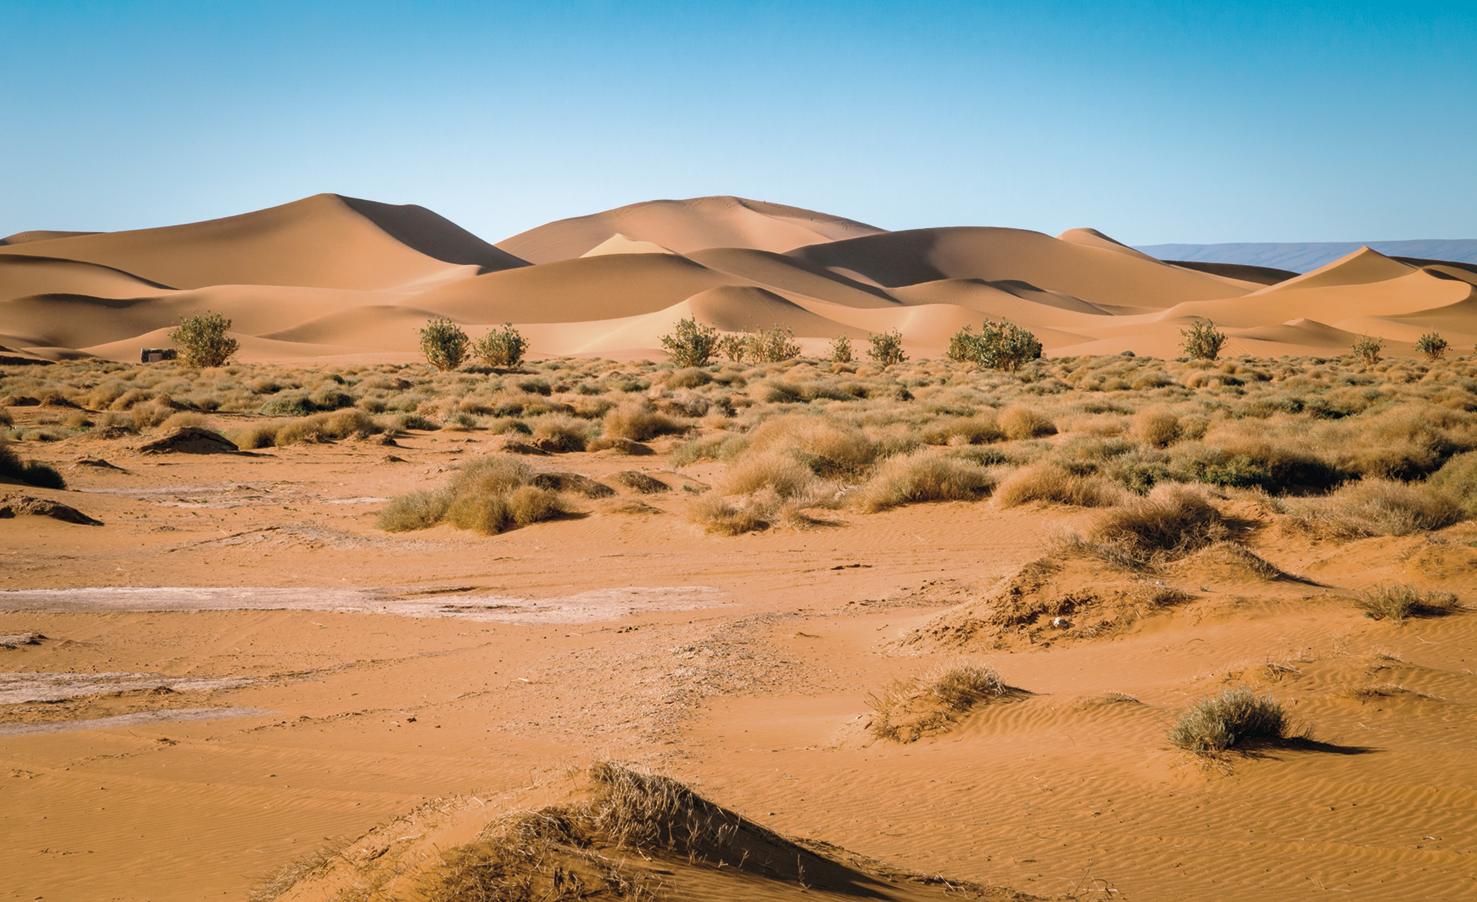 Fotografia. Um deserto com muitas dunas de areia e arbustos secos. O céu está azul.